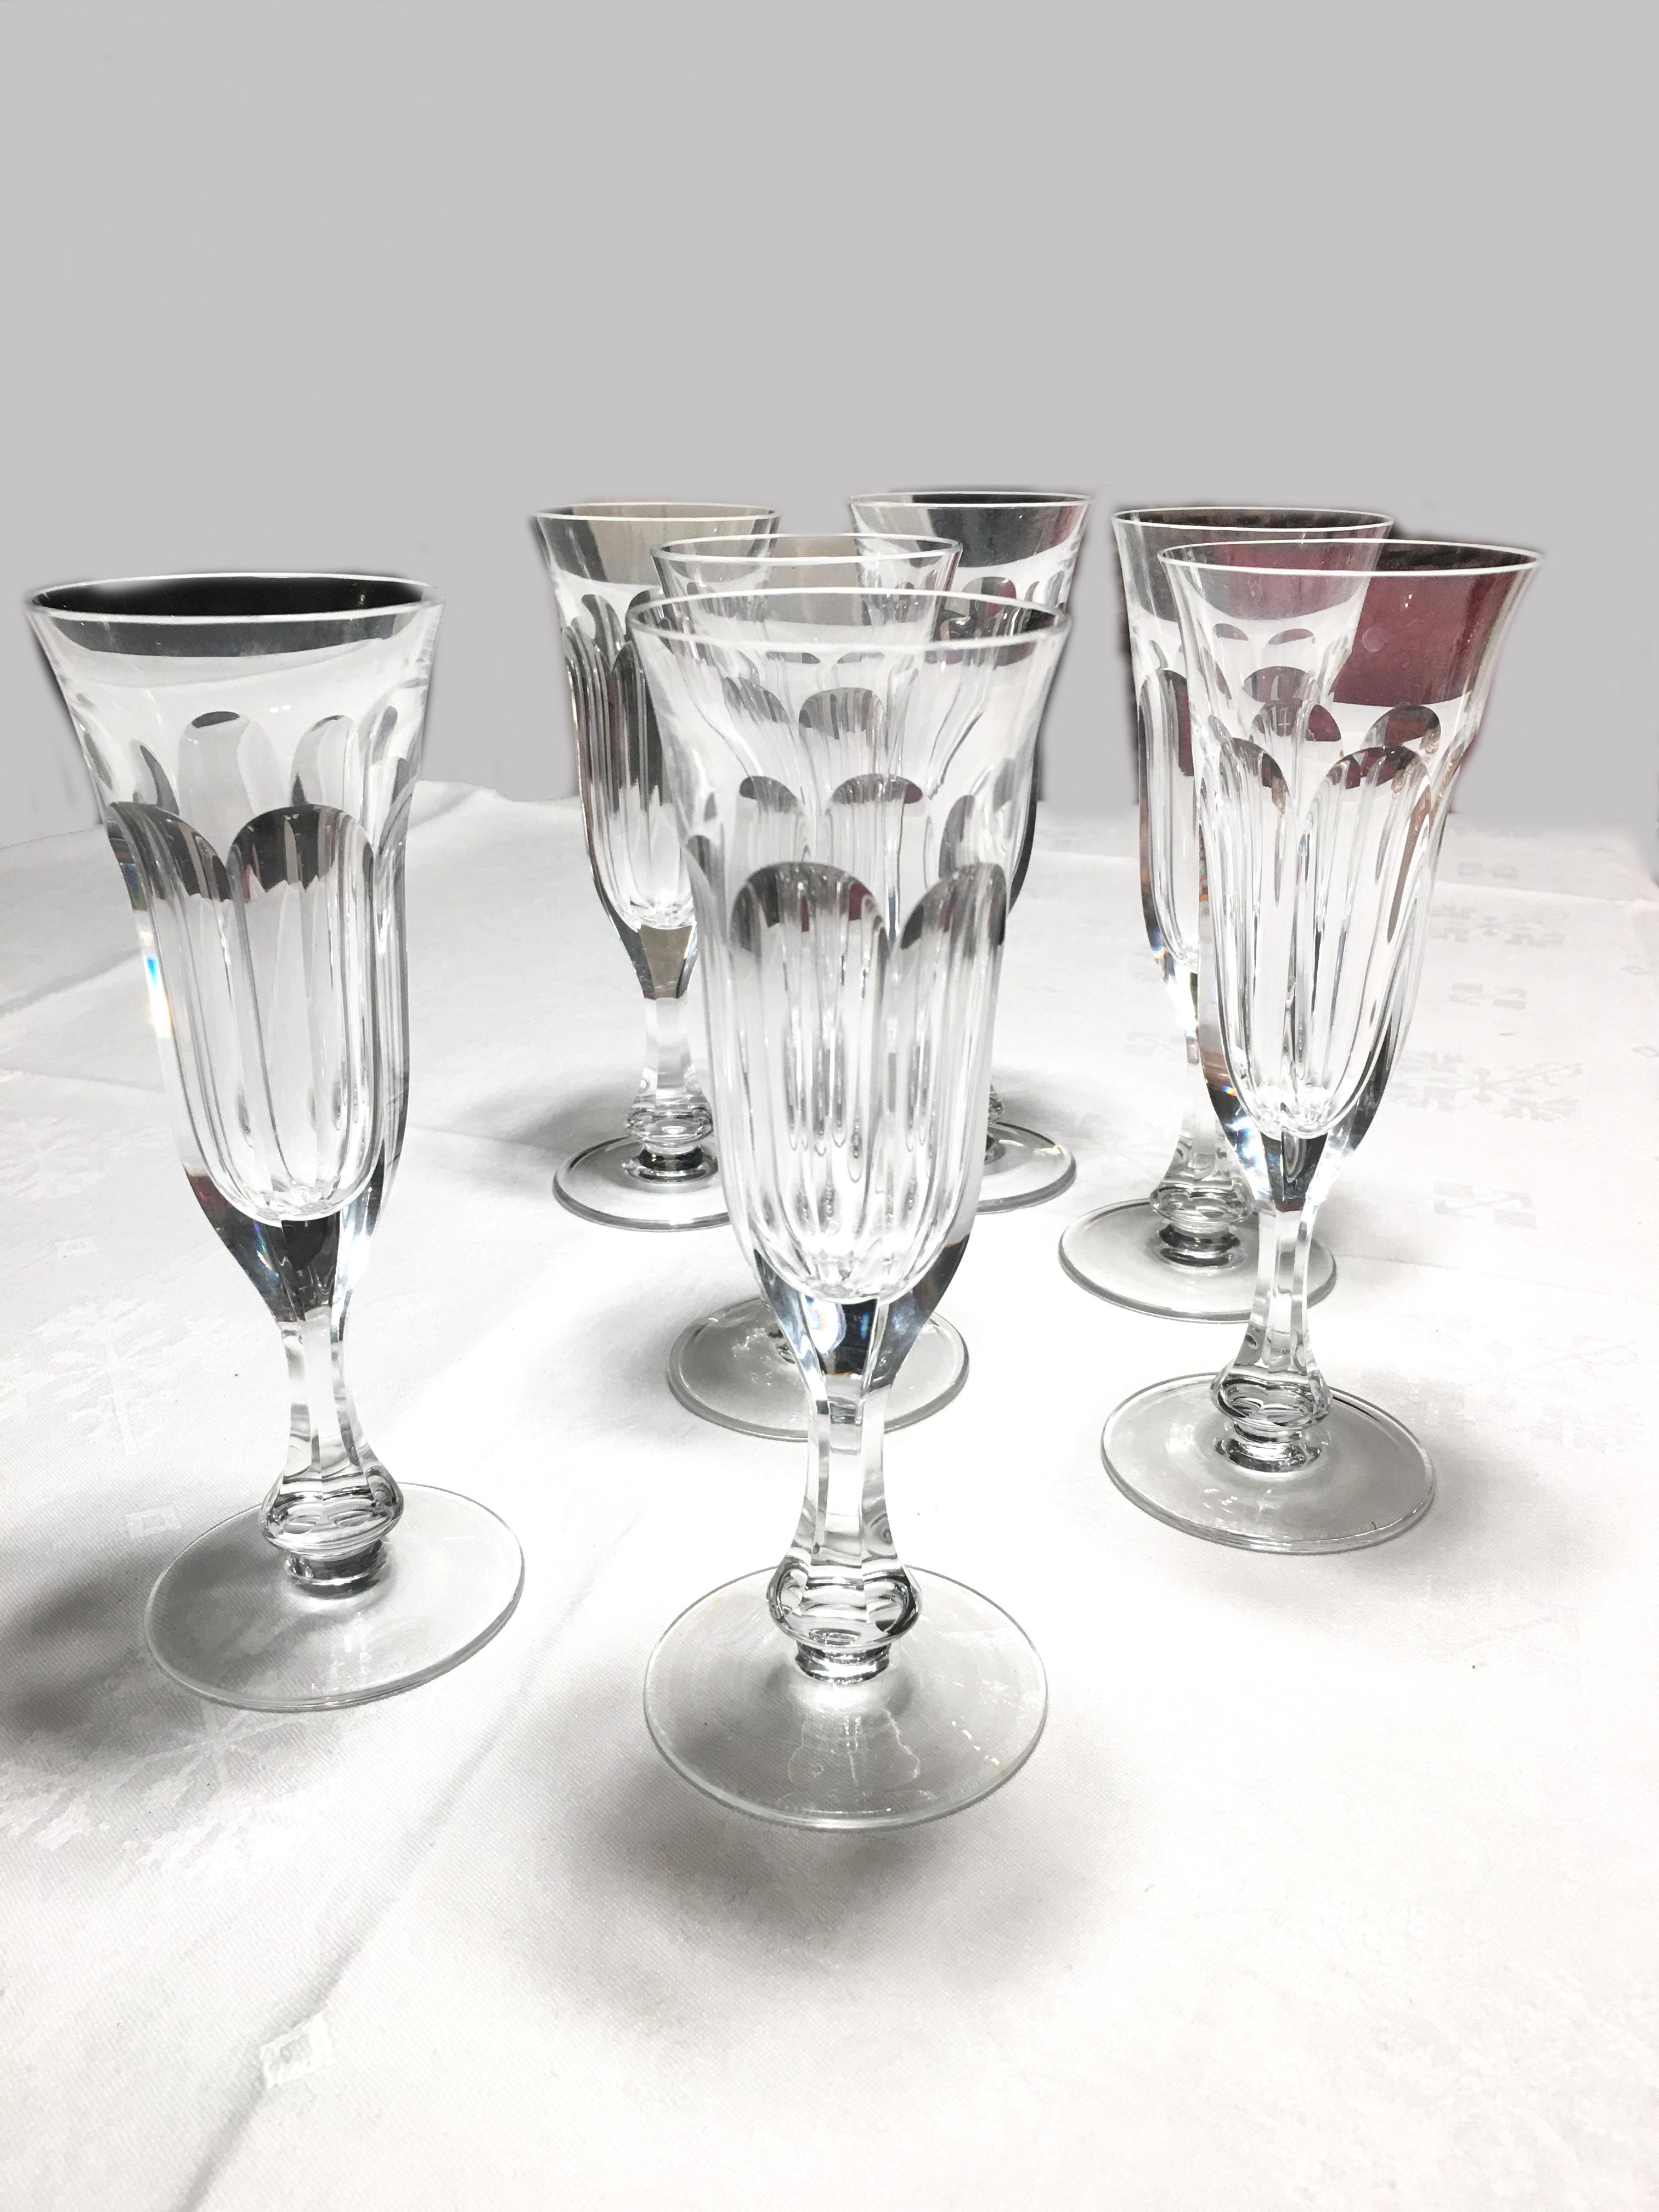 Il s'agit de 8 verres à champagne fabriqués en cristal soufflé à la main par Moser dans la très populaire coupe Lady Hamilton.

Ce motif est un exemple de la coupe 